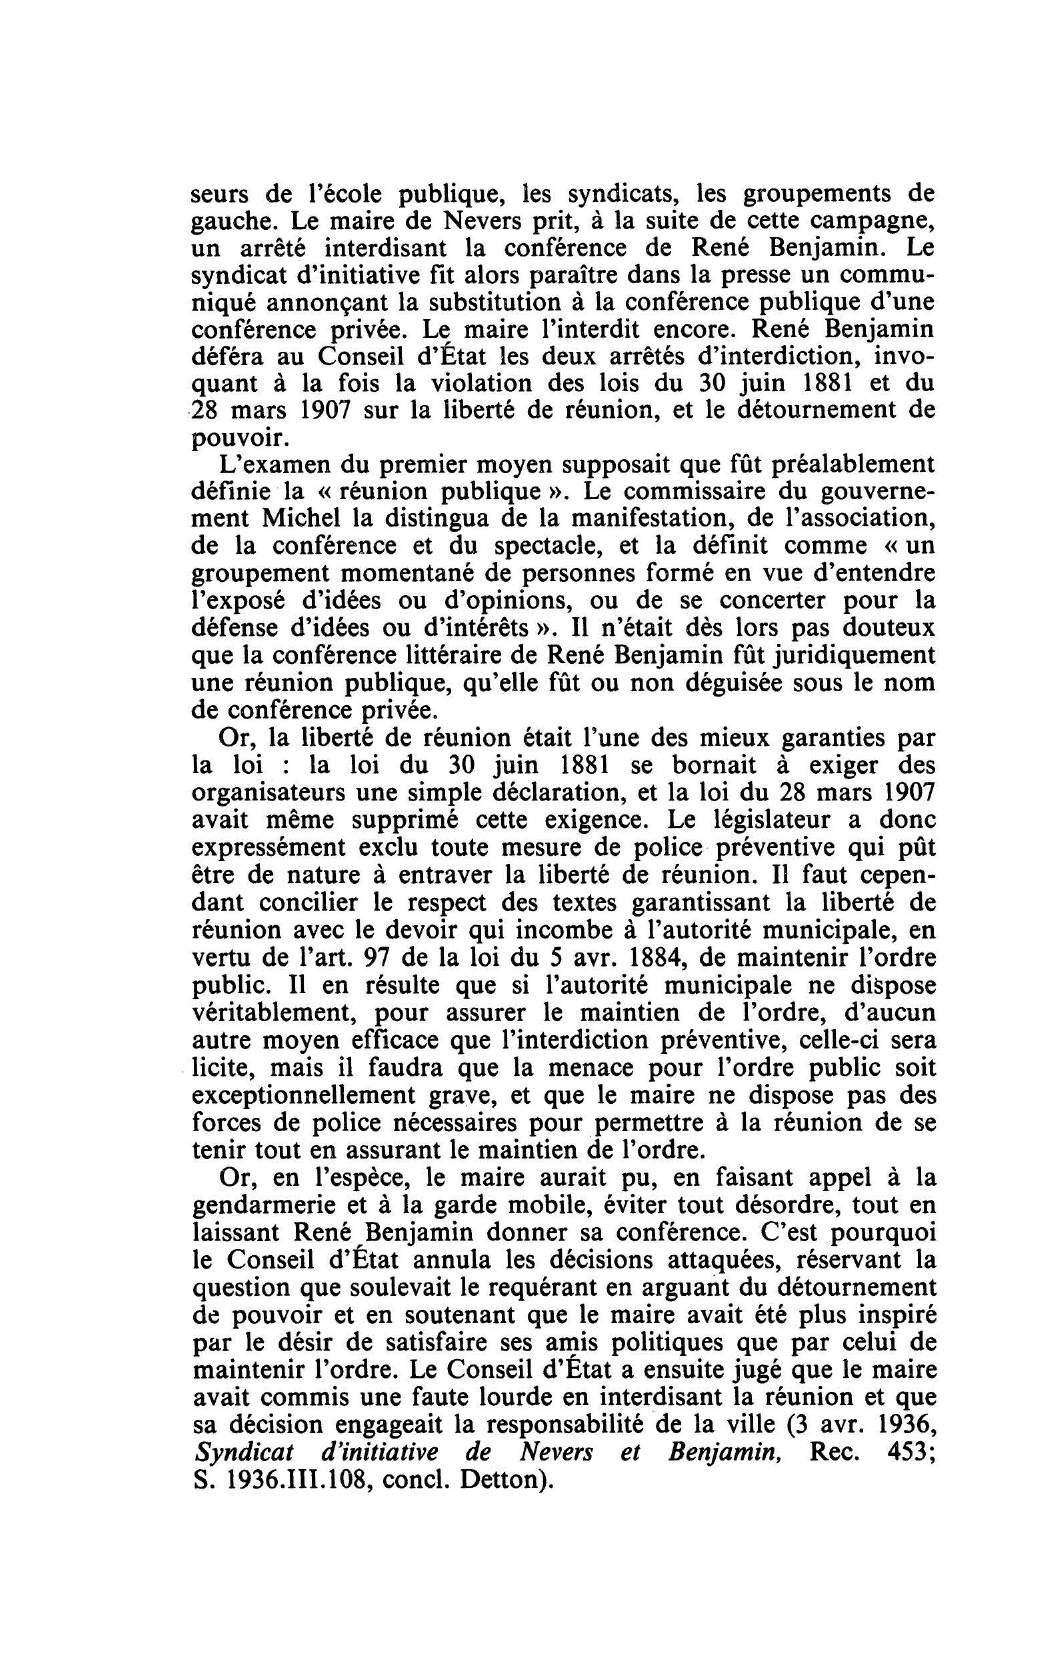 Prévisualisation du document POLICE - LIBERTÉ DE RÉUNION: C. E. 19 mai 1933, BENJAMIN, Rec. 541 (S. 1934.3.1, concl. Michel, note Mestre; D. 1933.3.354, concl. Michel)